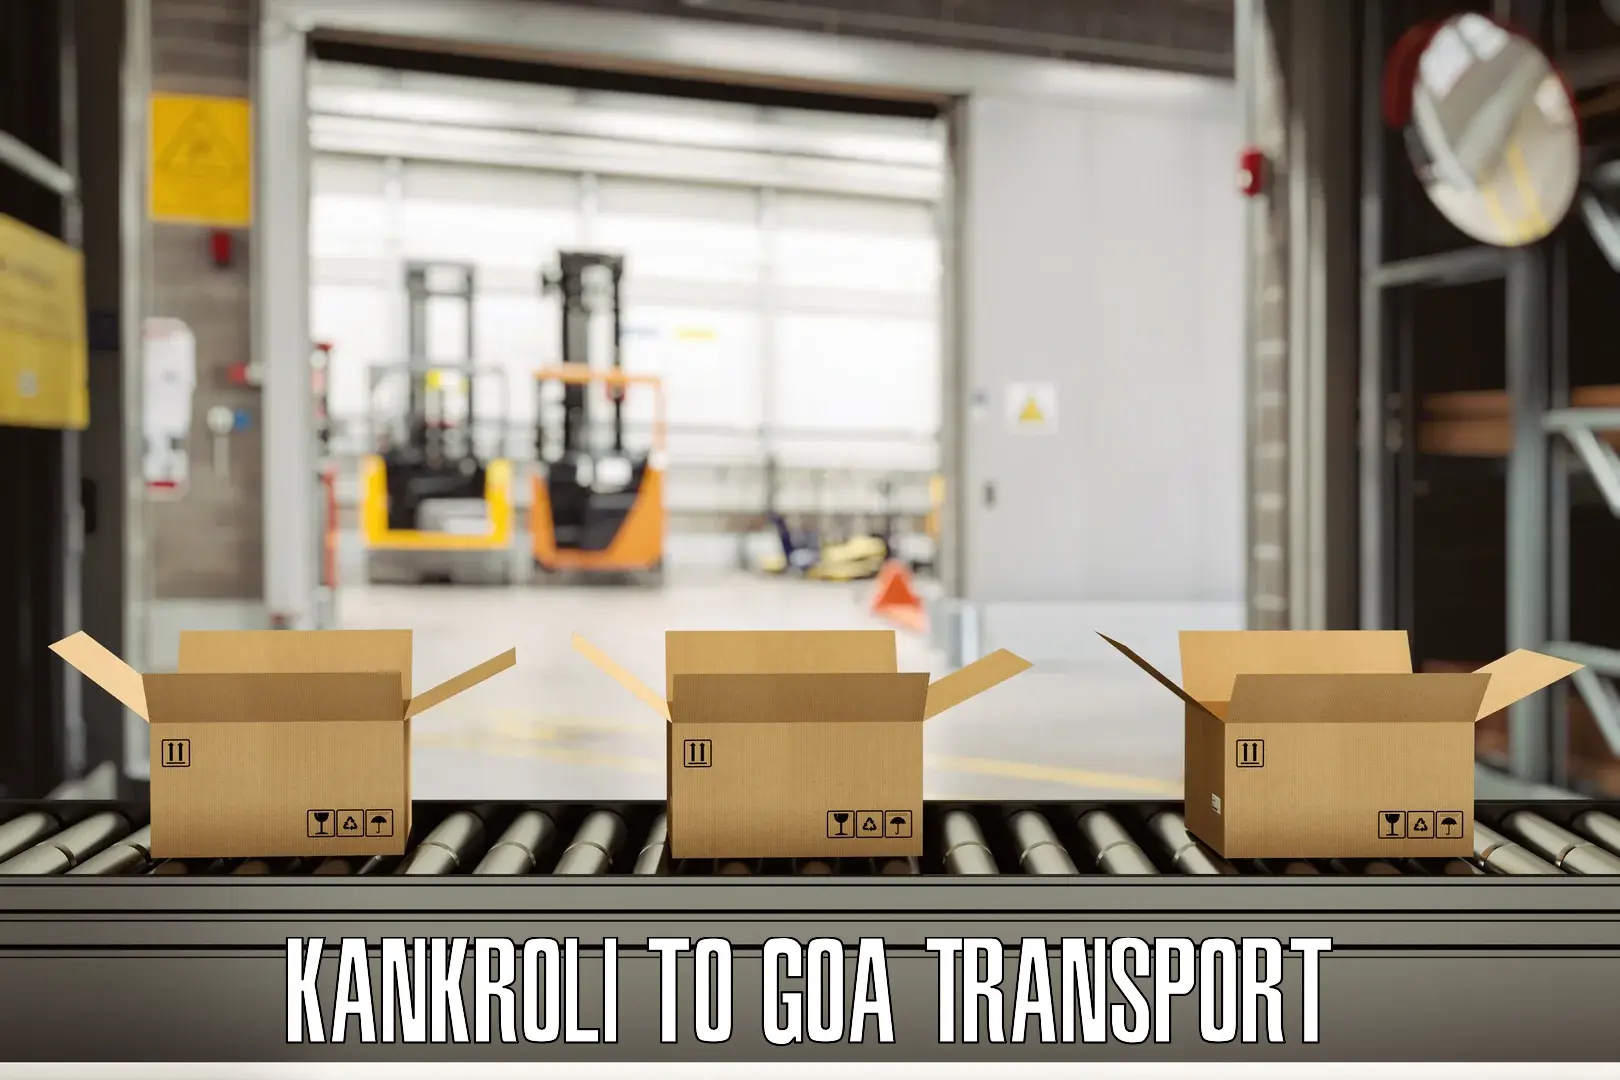 Scooty transport charges Kankroli to Goa